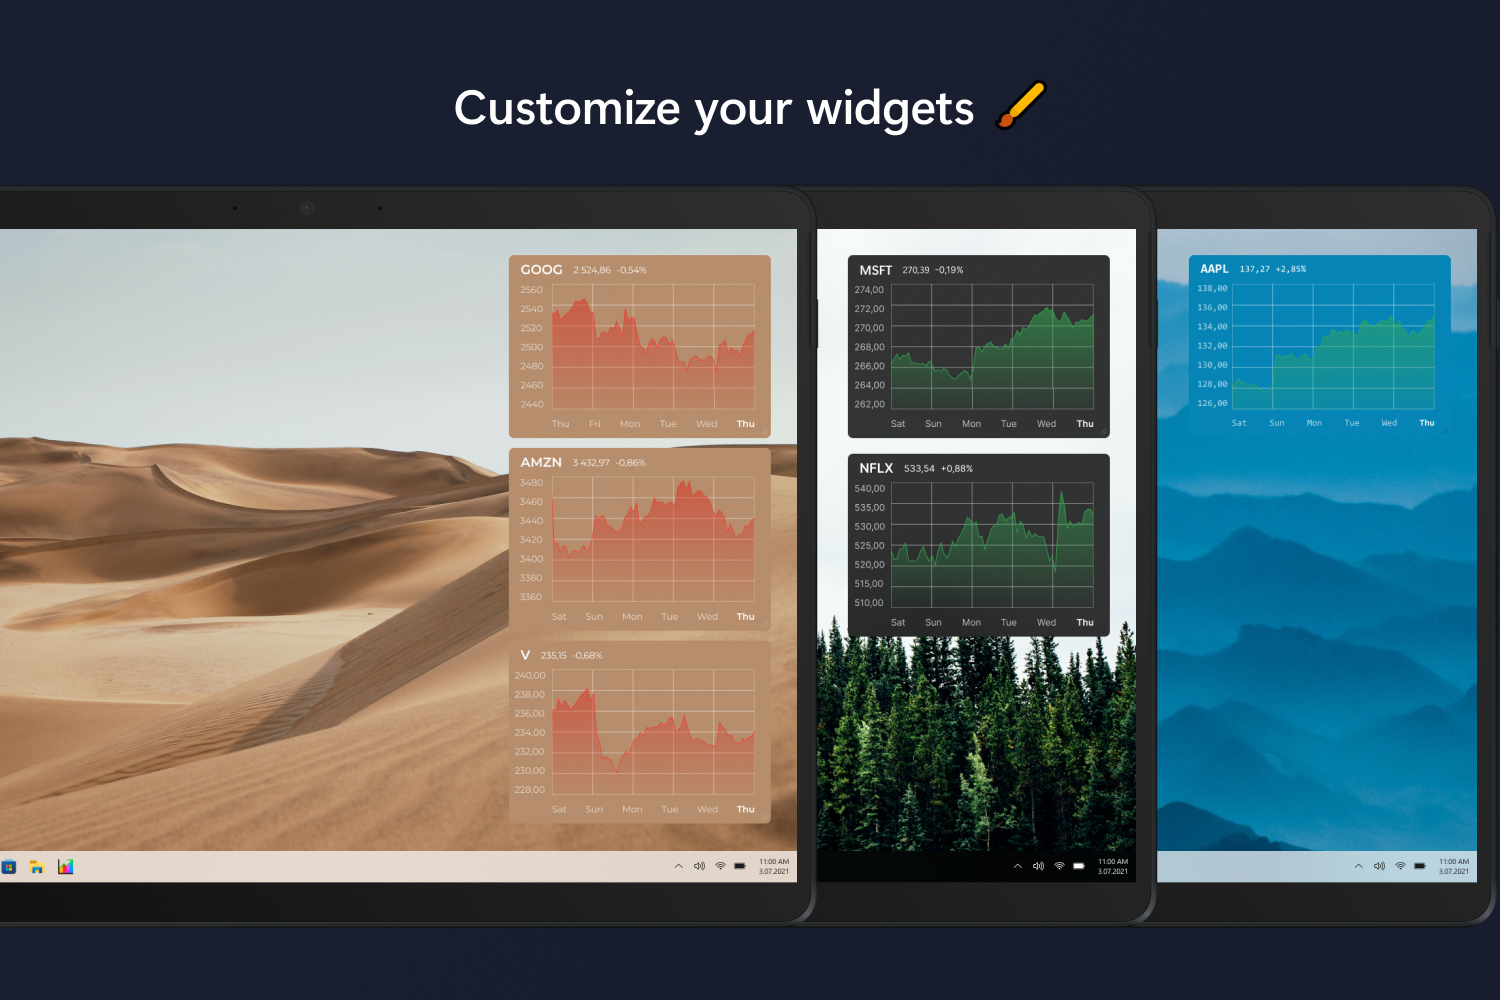 Stock Desktop Widget